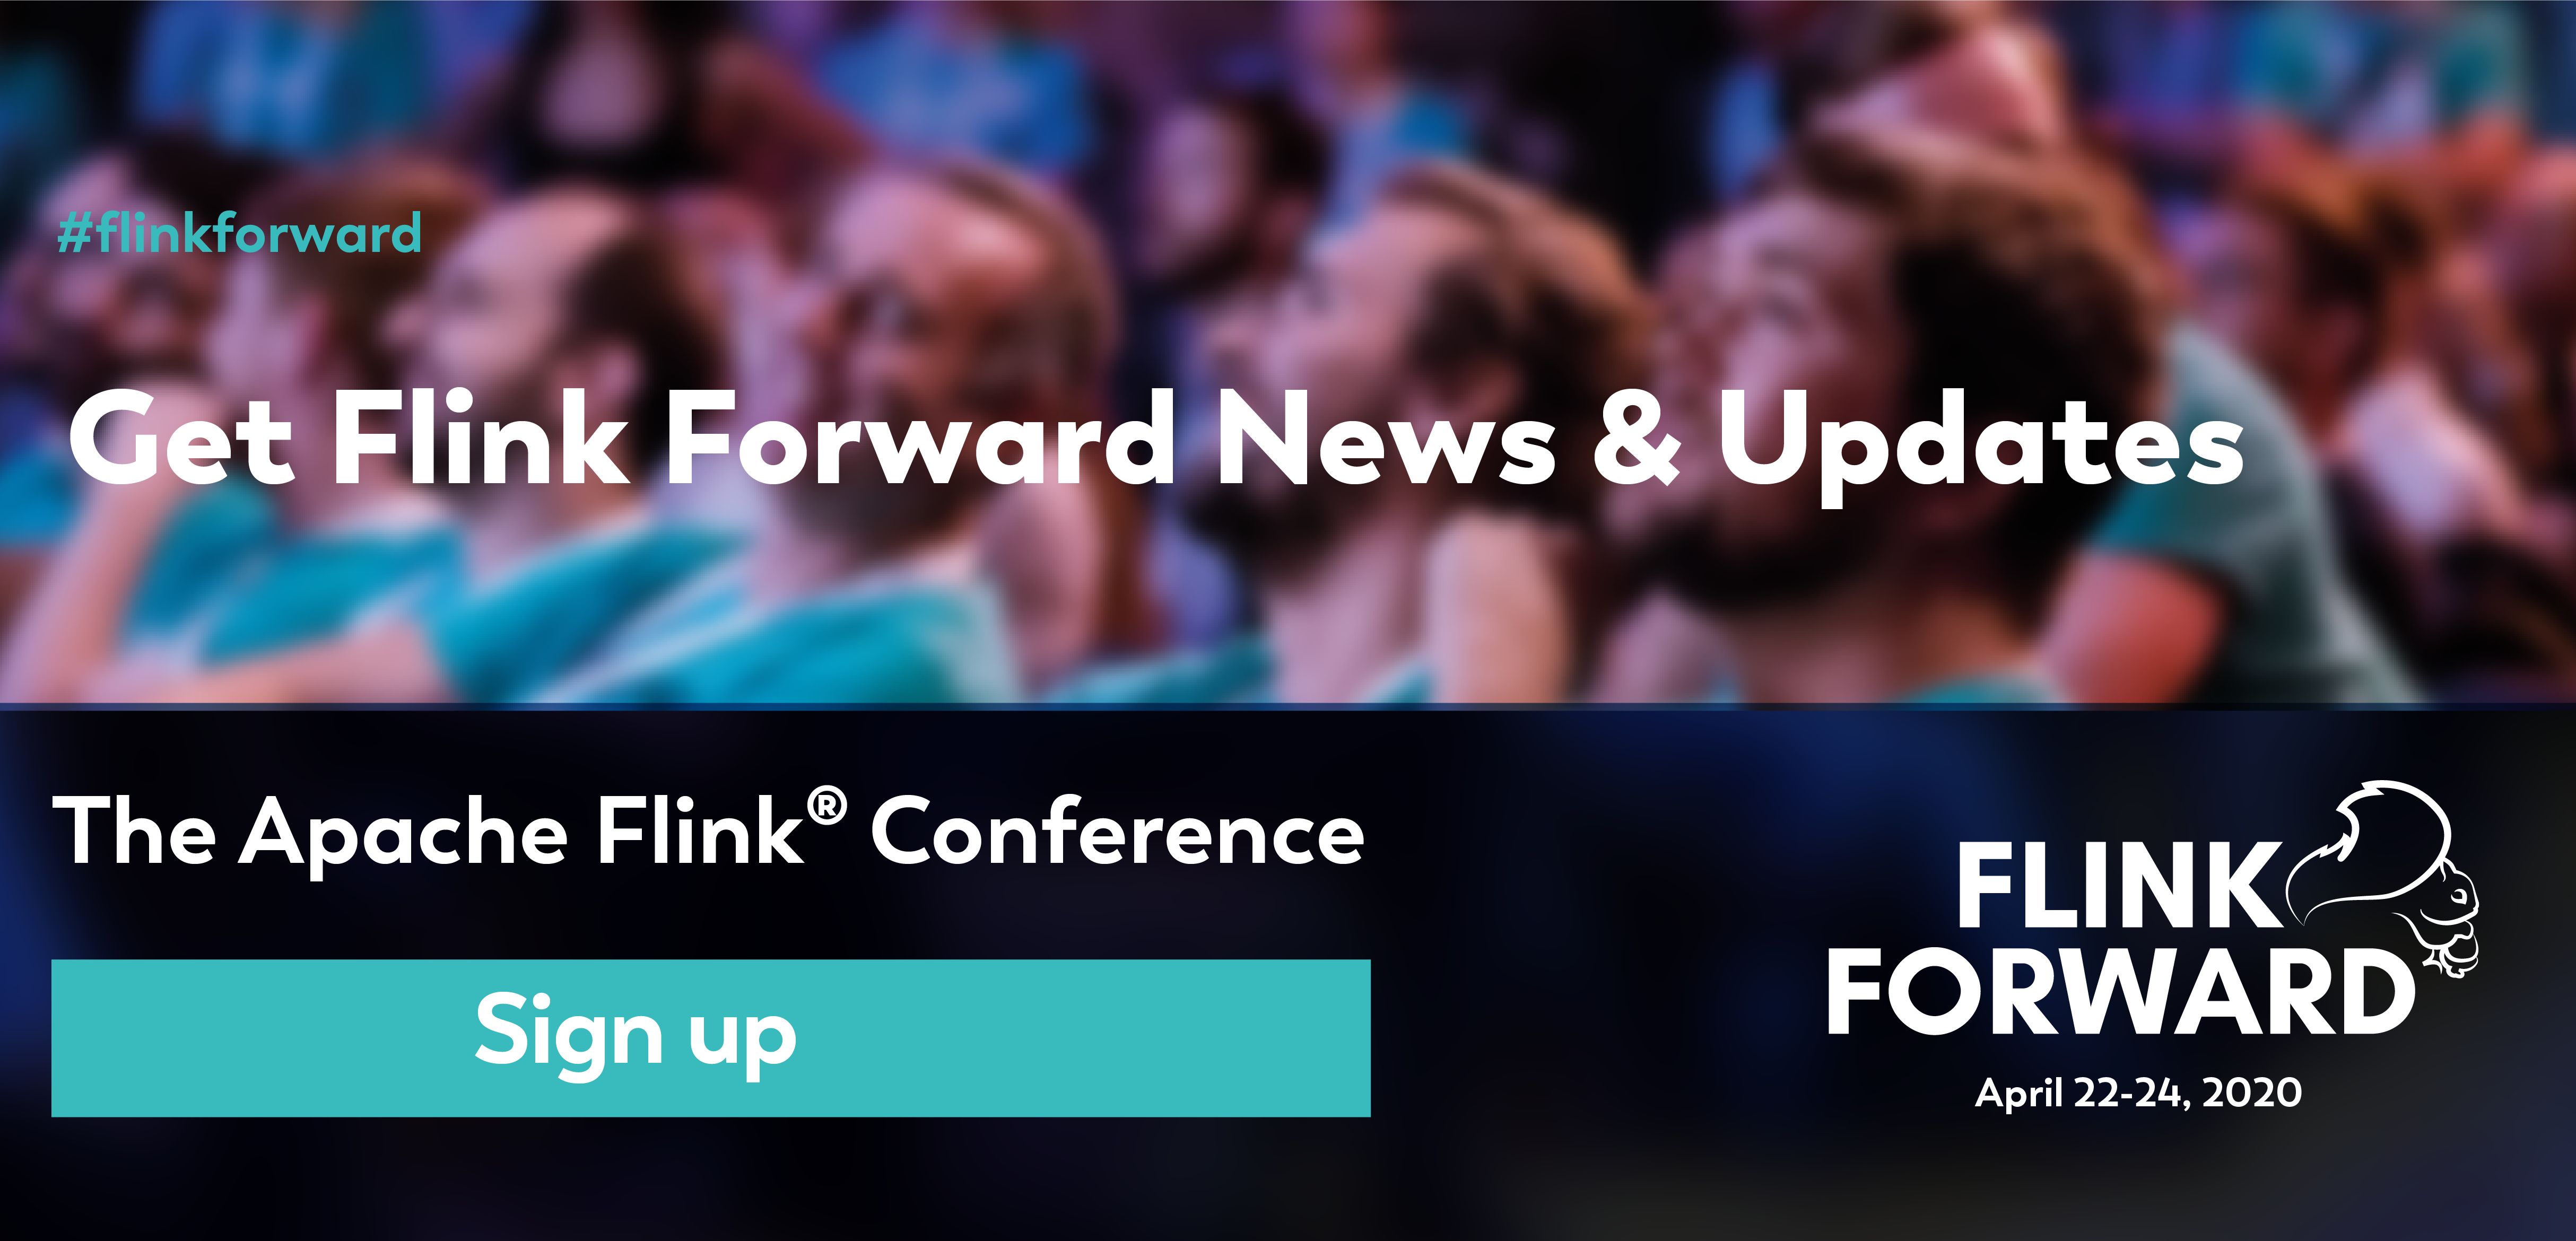 Flink Forward Sign up for News & Updates